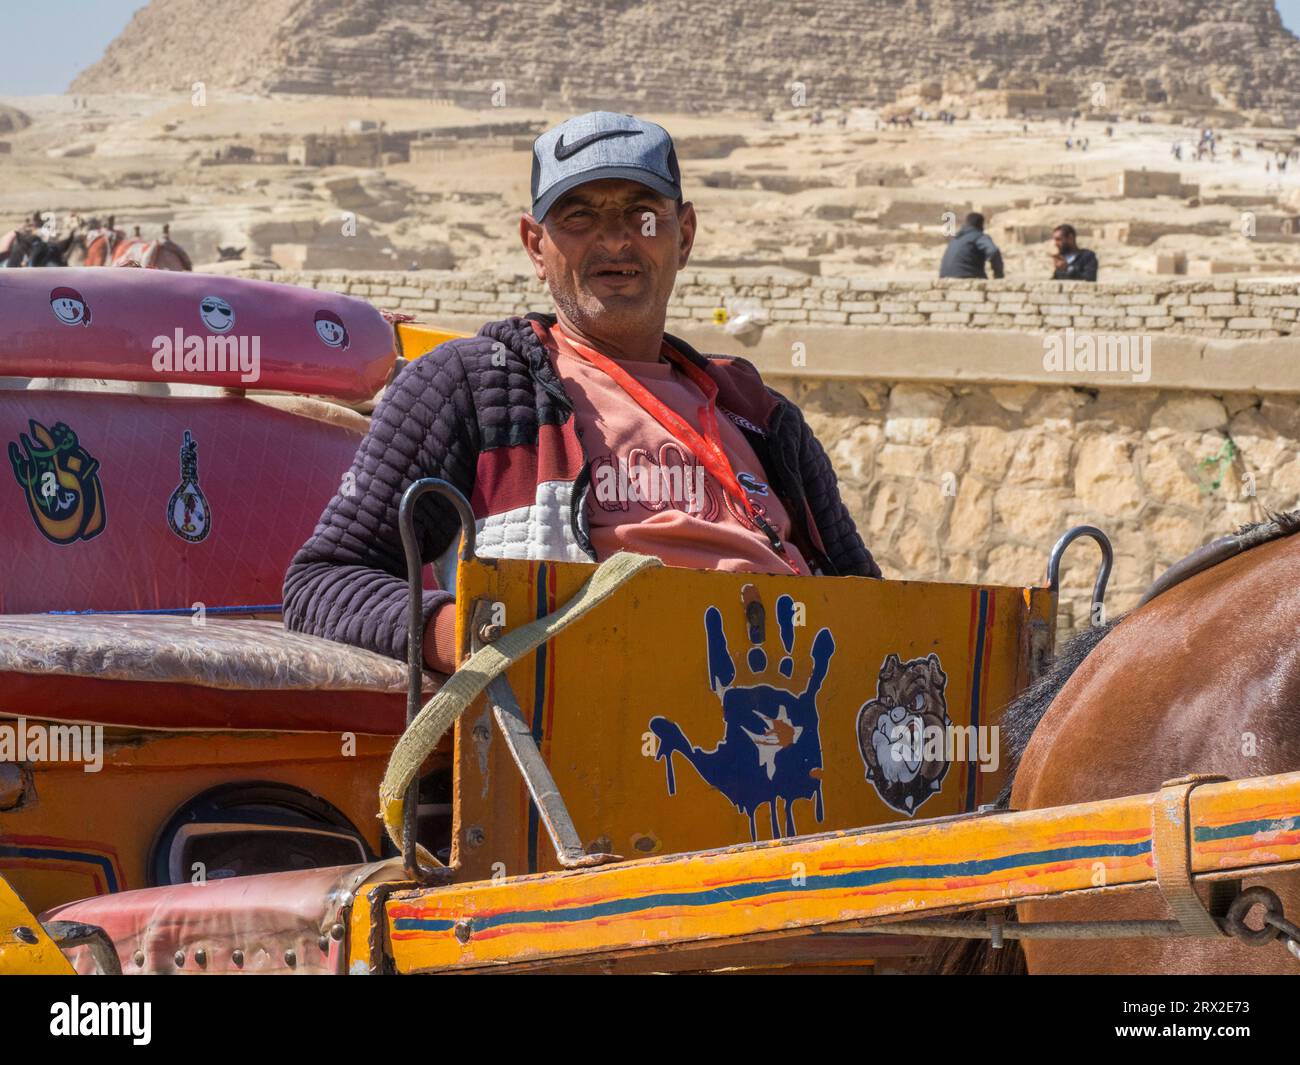 Le conducteur d'une calèche décorée au complexe Pyramide, site du patrimoine mondial de l'UNESCO, Gizeh, près du Caire, Egypte, Afrique du Nord, Afrique Banque D'Images